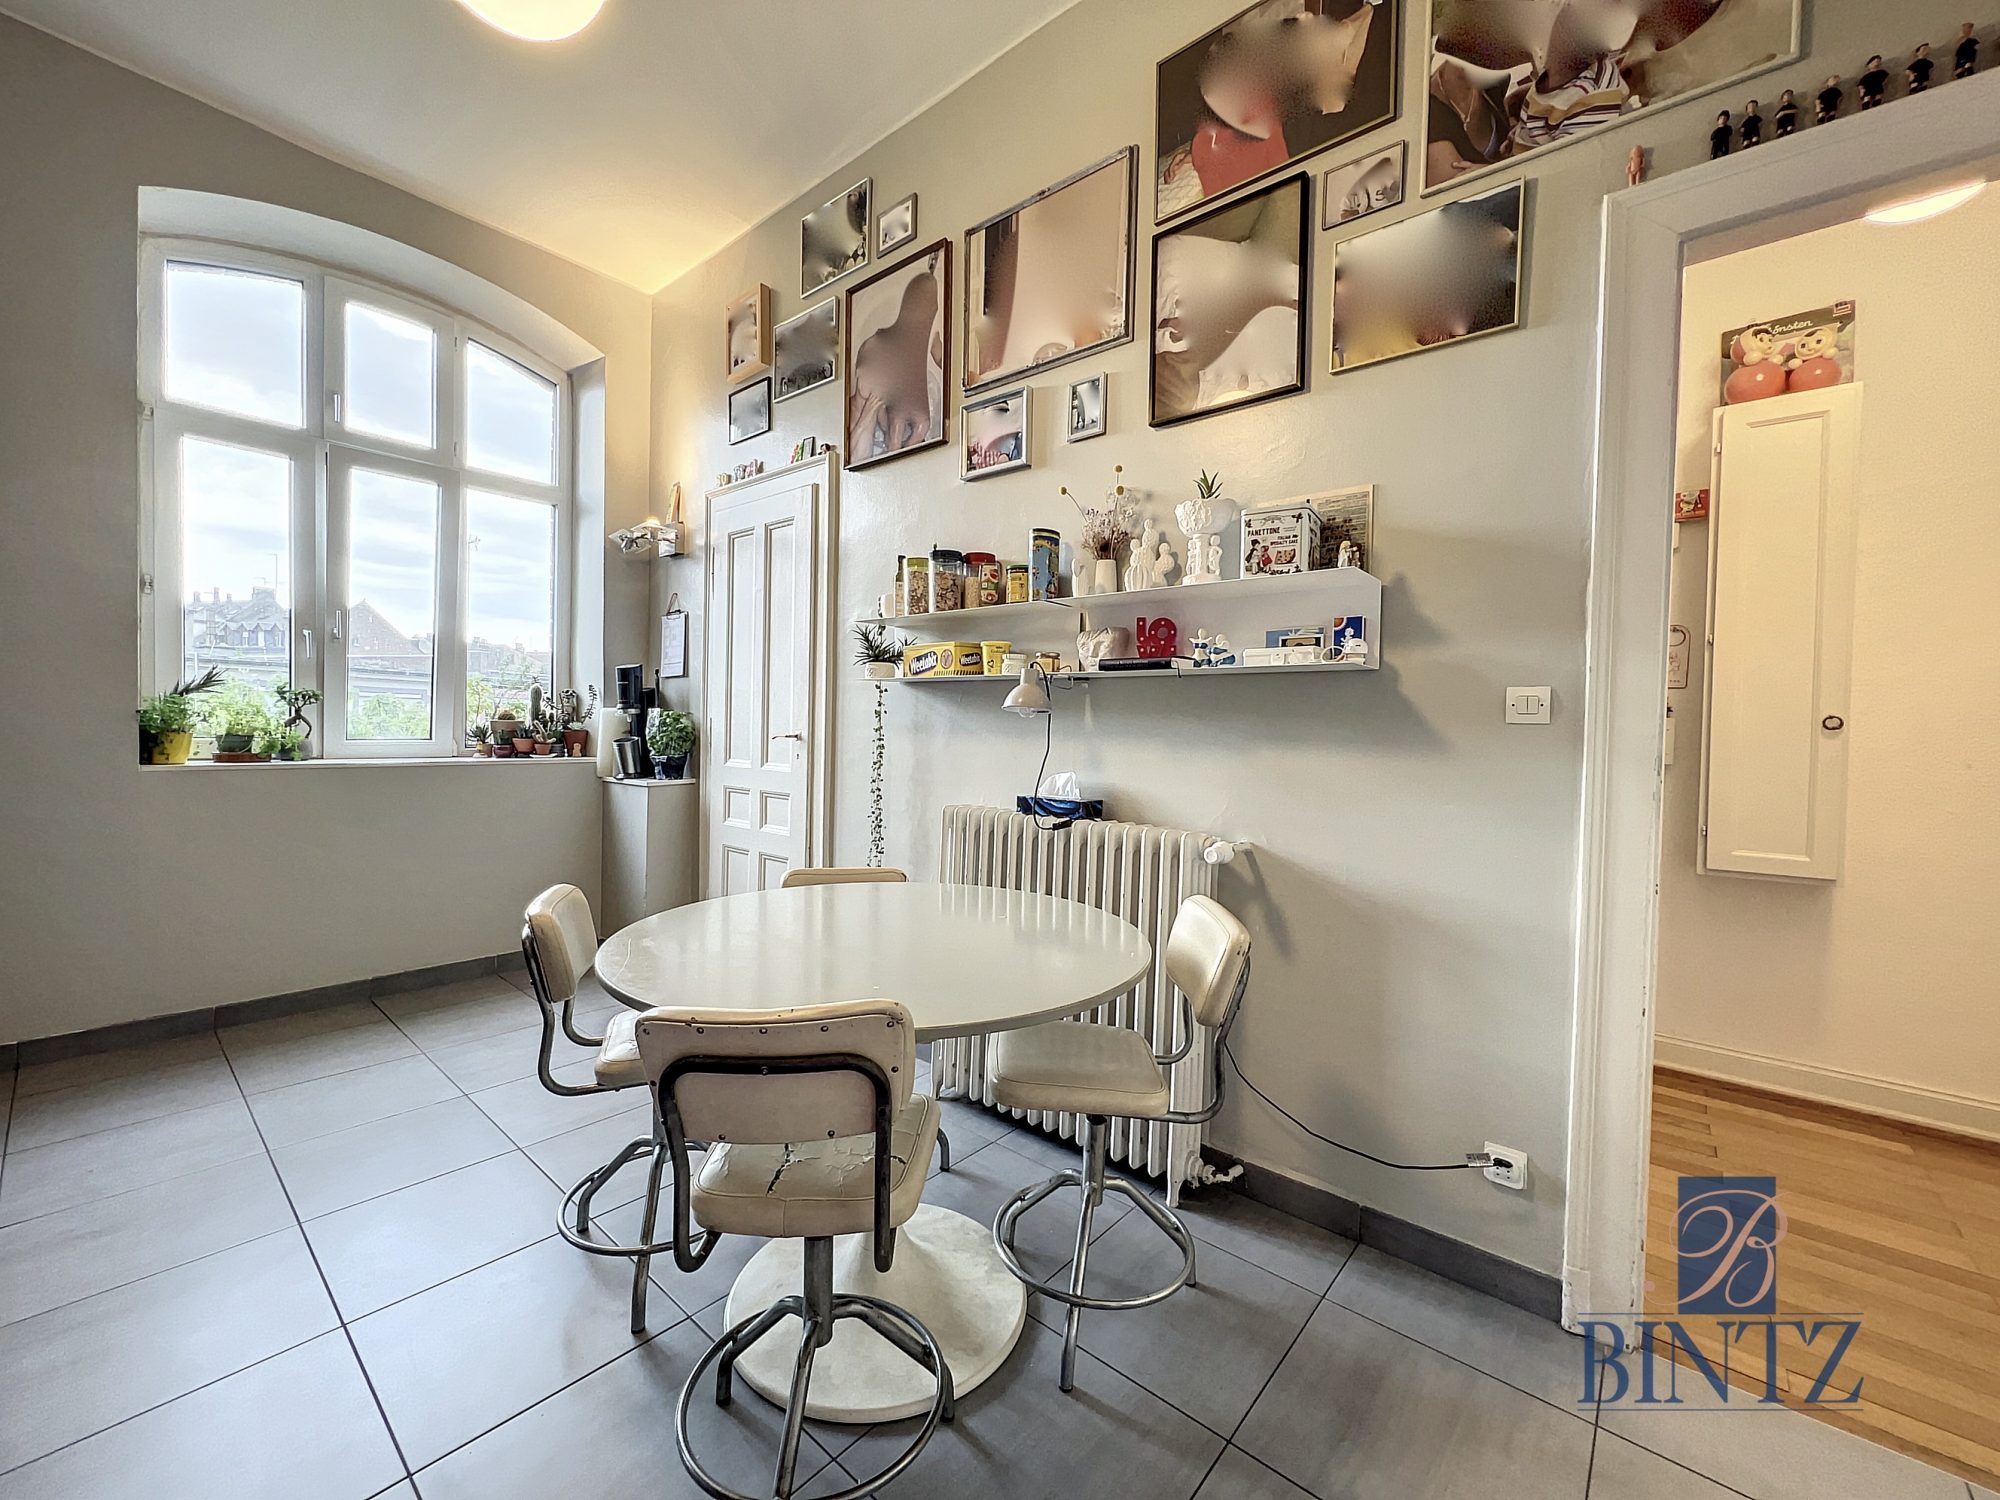 6P ORANGERIE - location appartement Strasbourg - Bintz Immobilier - 9